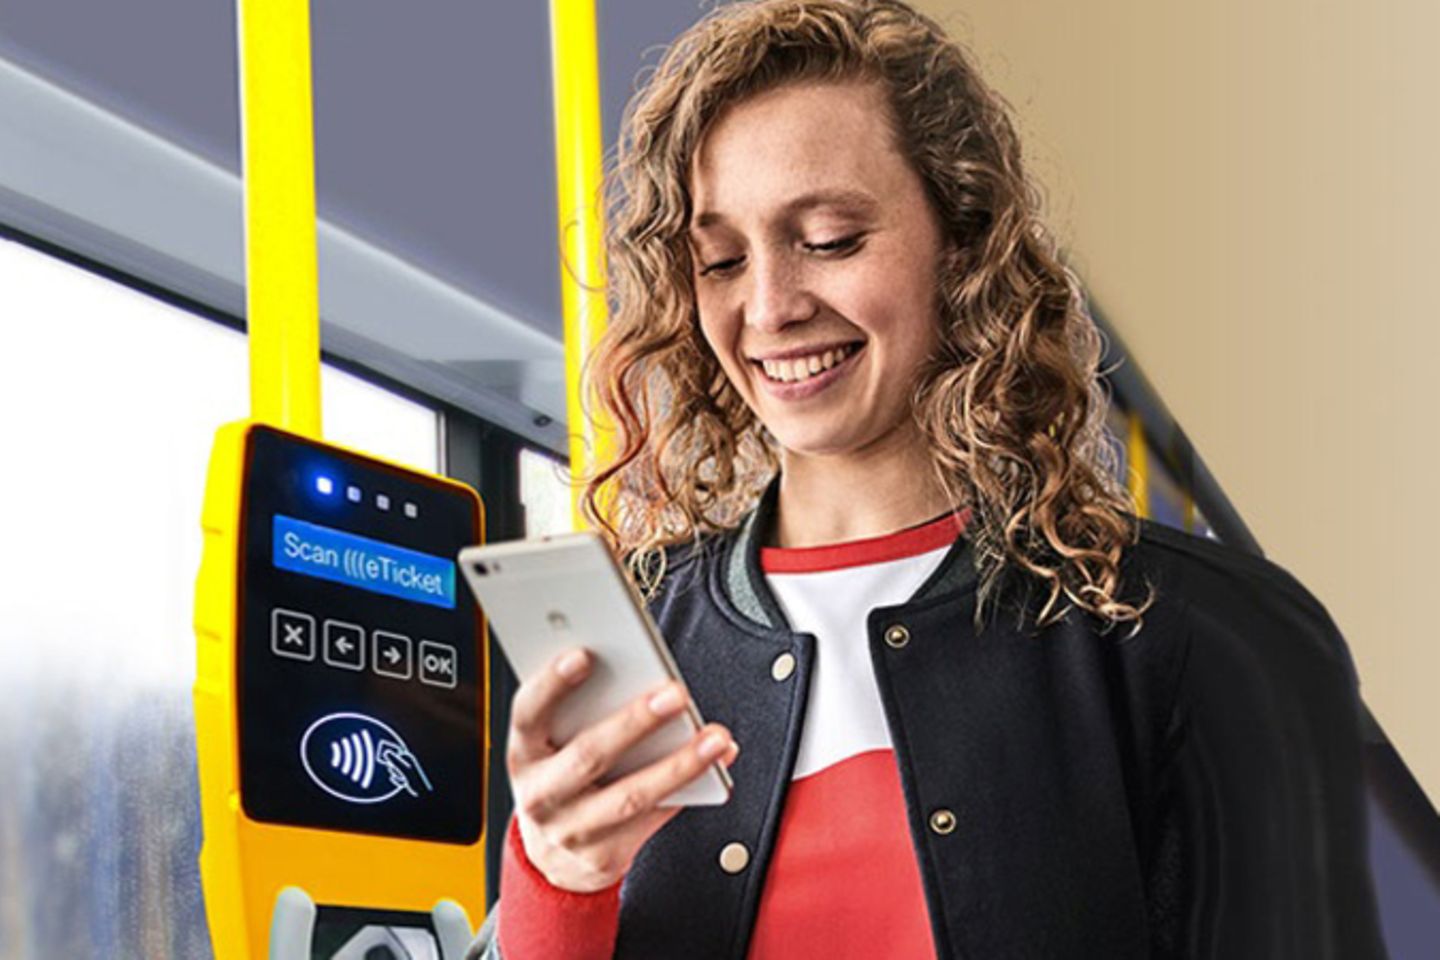 Frau steht in Bus neben kontaktlosem Fahrkartenautomaten und blickt auf ihr Smartphone.